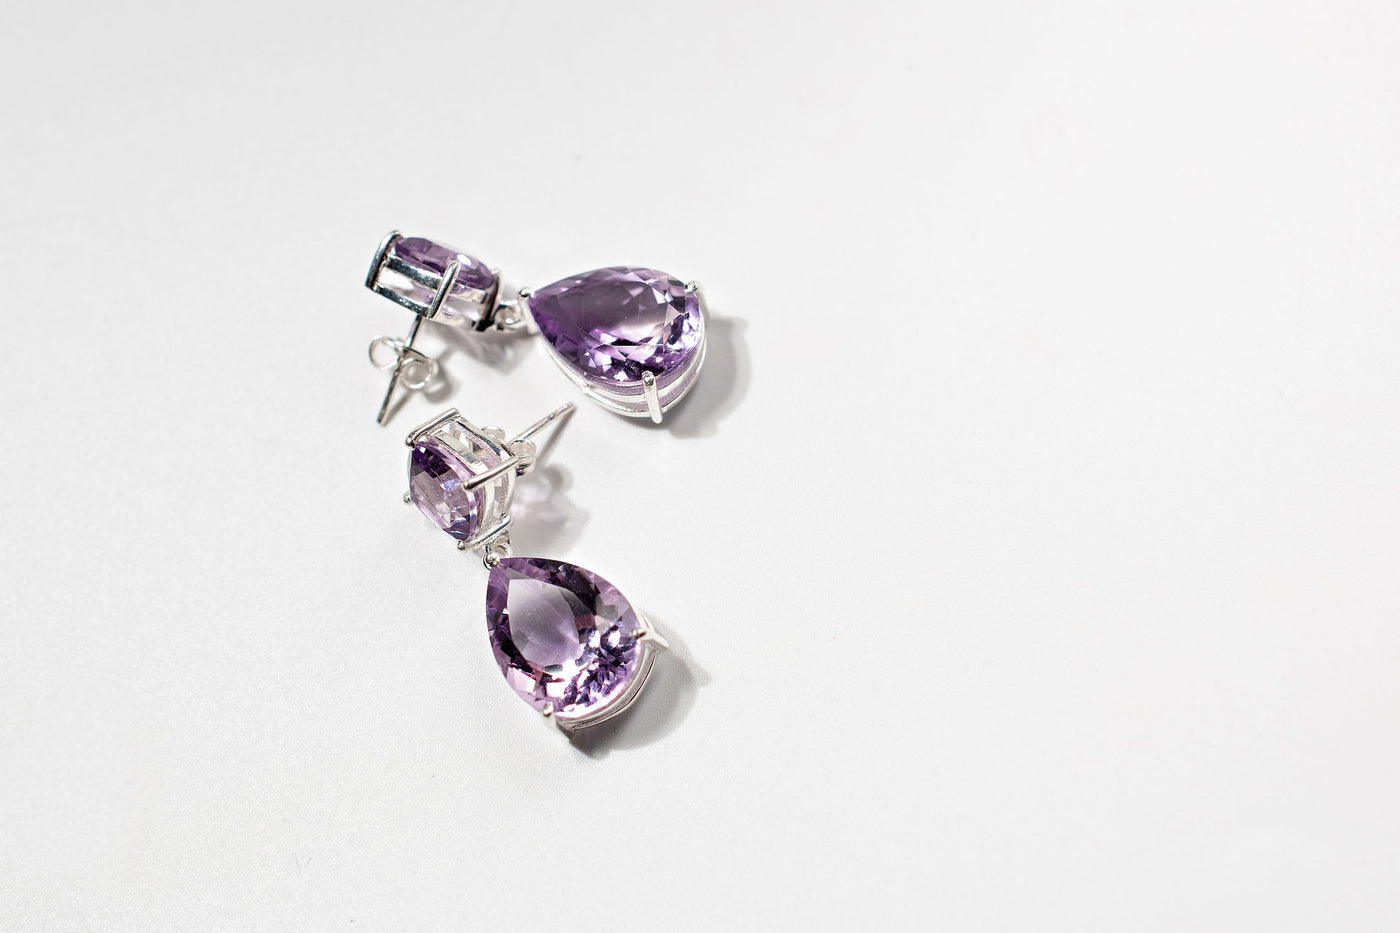 7ct Lavender Amethyst Drop Earrings – Sterling Silver